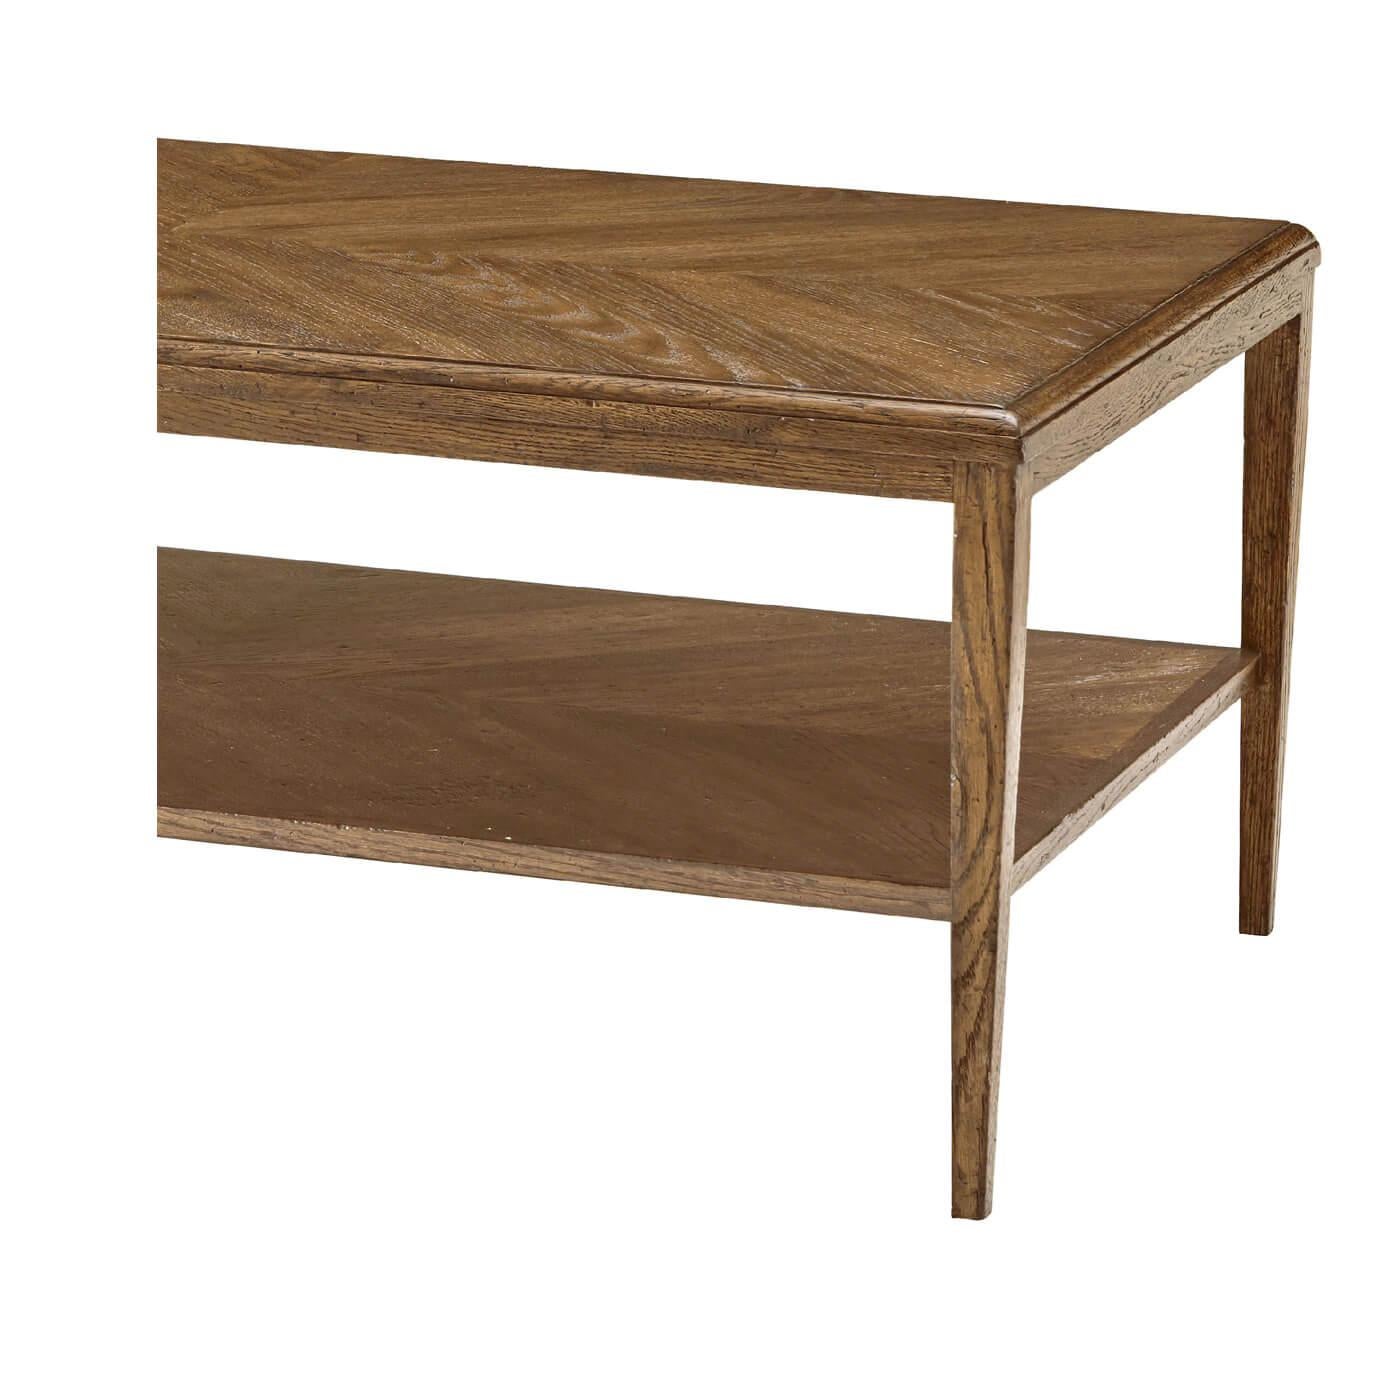 Une table basse moderne en chêne rustique clair. Cette table basse à deux niveaux présente un motif de parqueterie concentrique sur les niveaux supérieurs et inférieurs. Il repose sur des pieds en chêne effilés. 
Dimensions
50